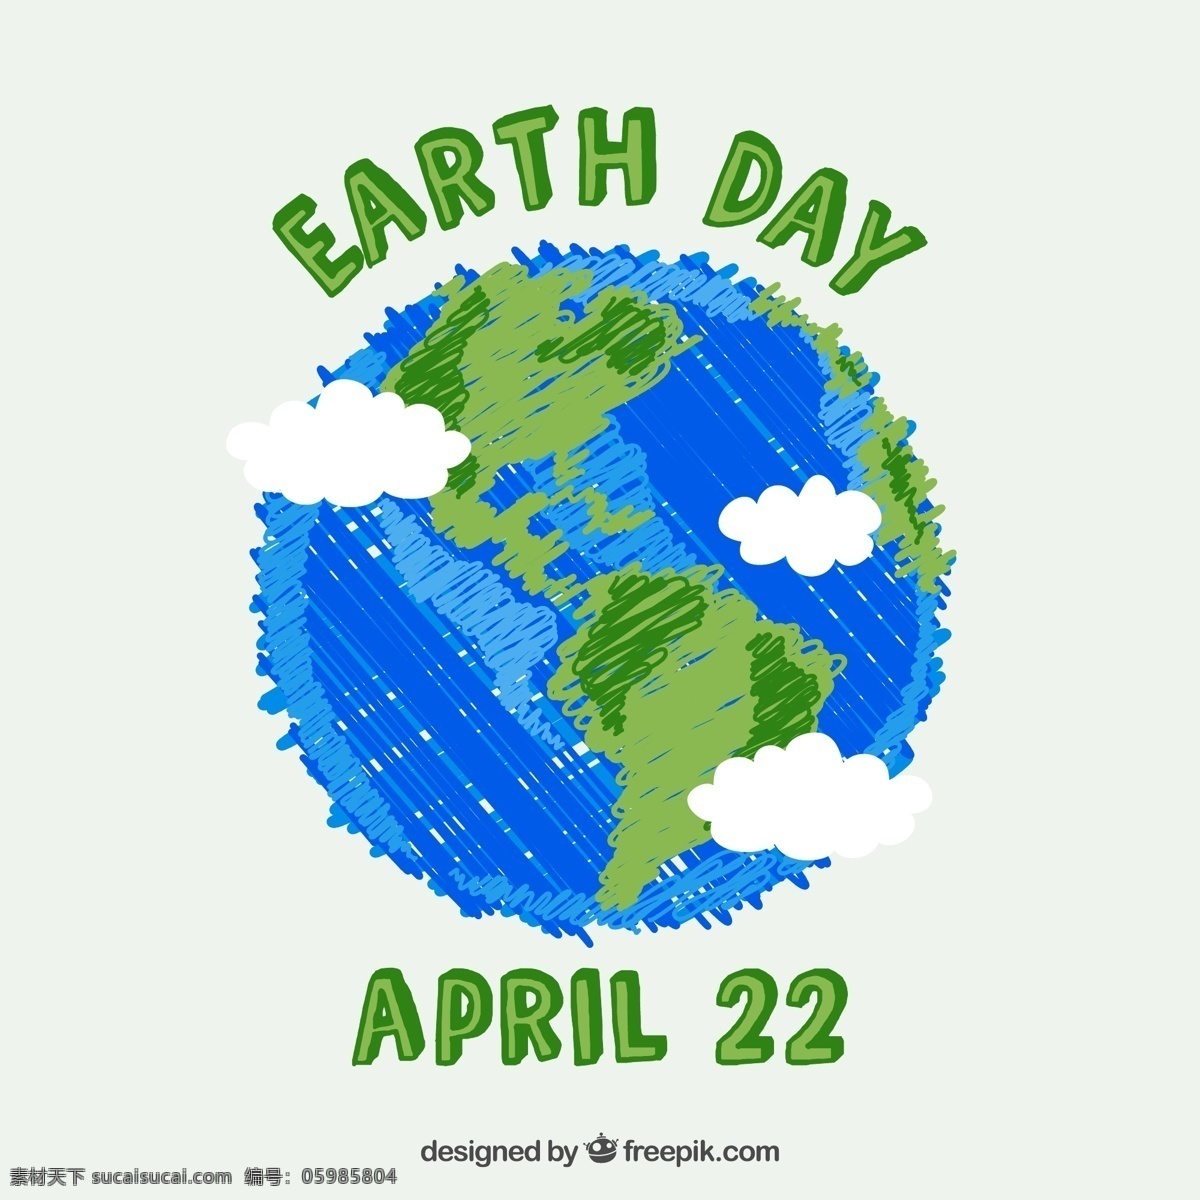 彩绘 蓝色 地球 矢量图 方格纸 云朵 大陆板块 海洋 地球日 4月22日